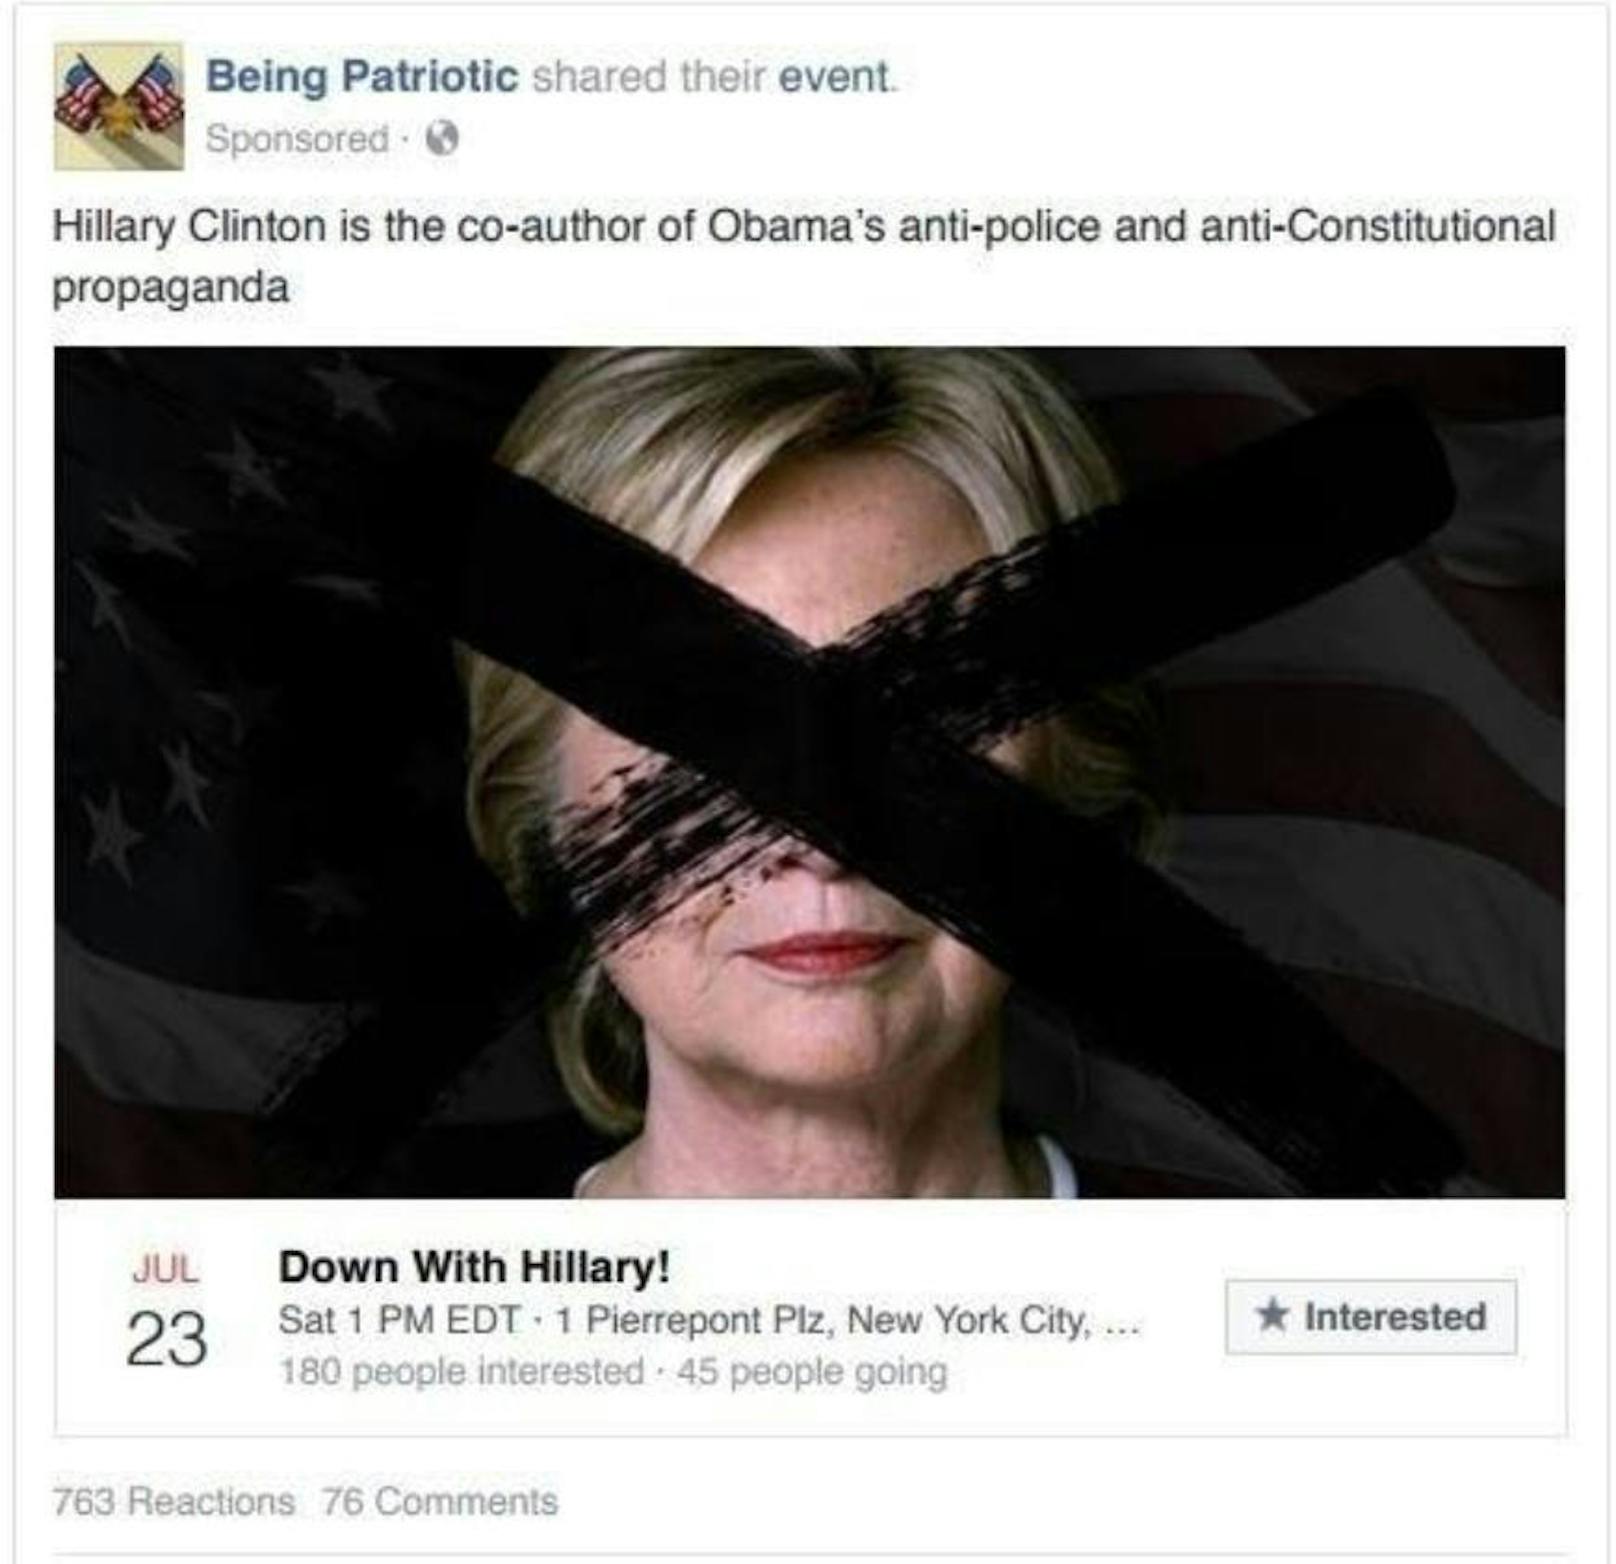 "Nieder mit Hillary", fordert eine angebliche Patrioten-Gruppe. Sie brandmarkt Clinton als Mitverfasserin von Obama-"Propaganda" gegen die Polizei und gegen die Verfassung.